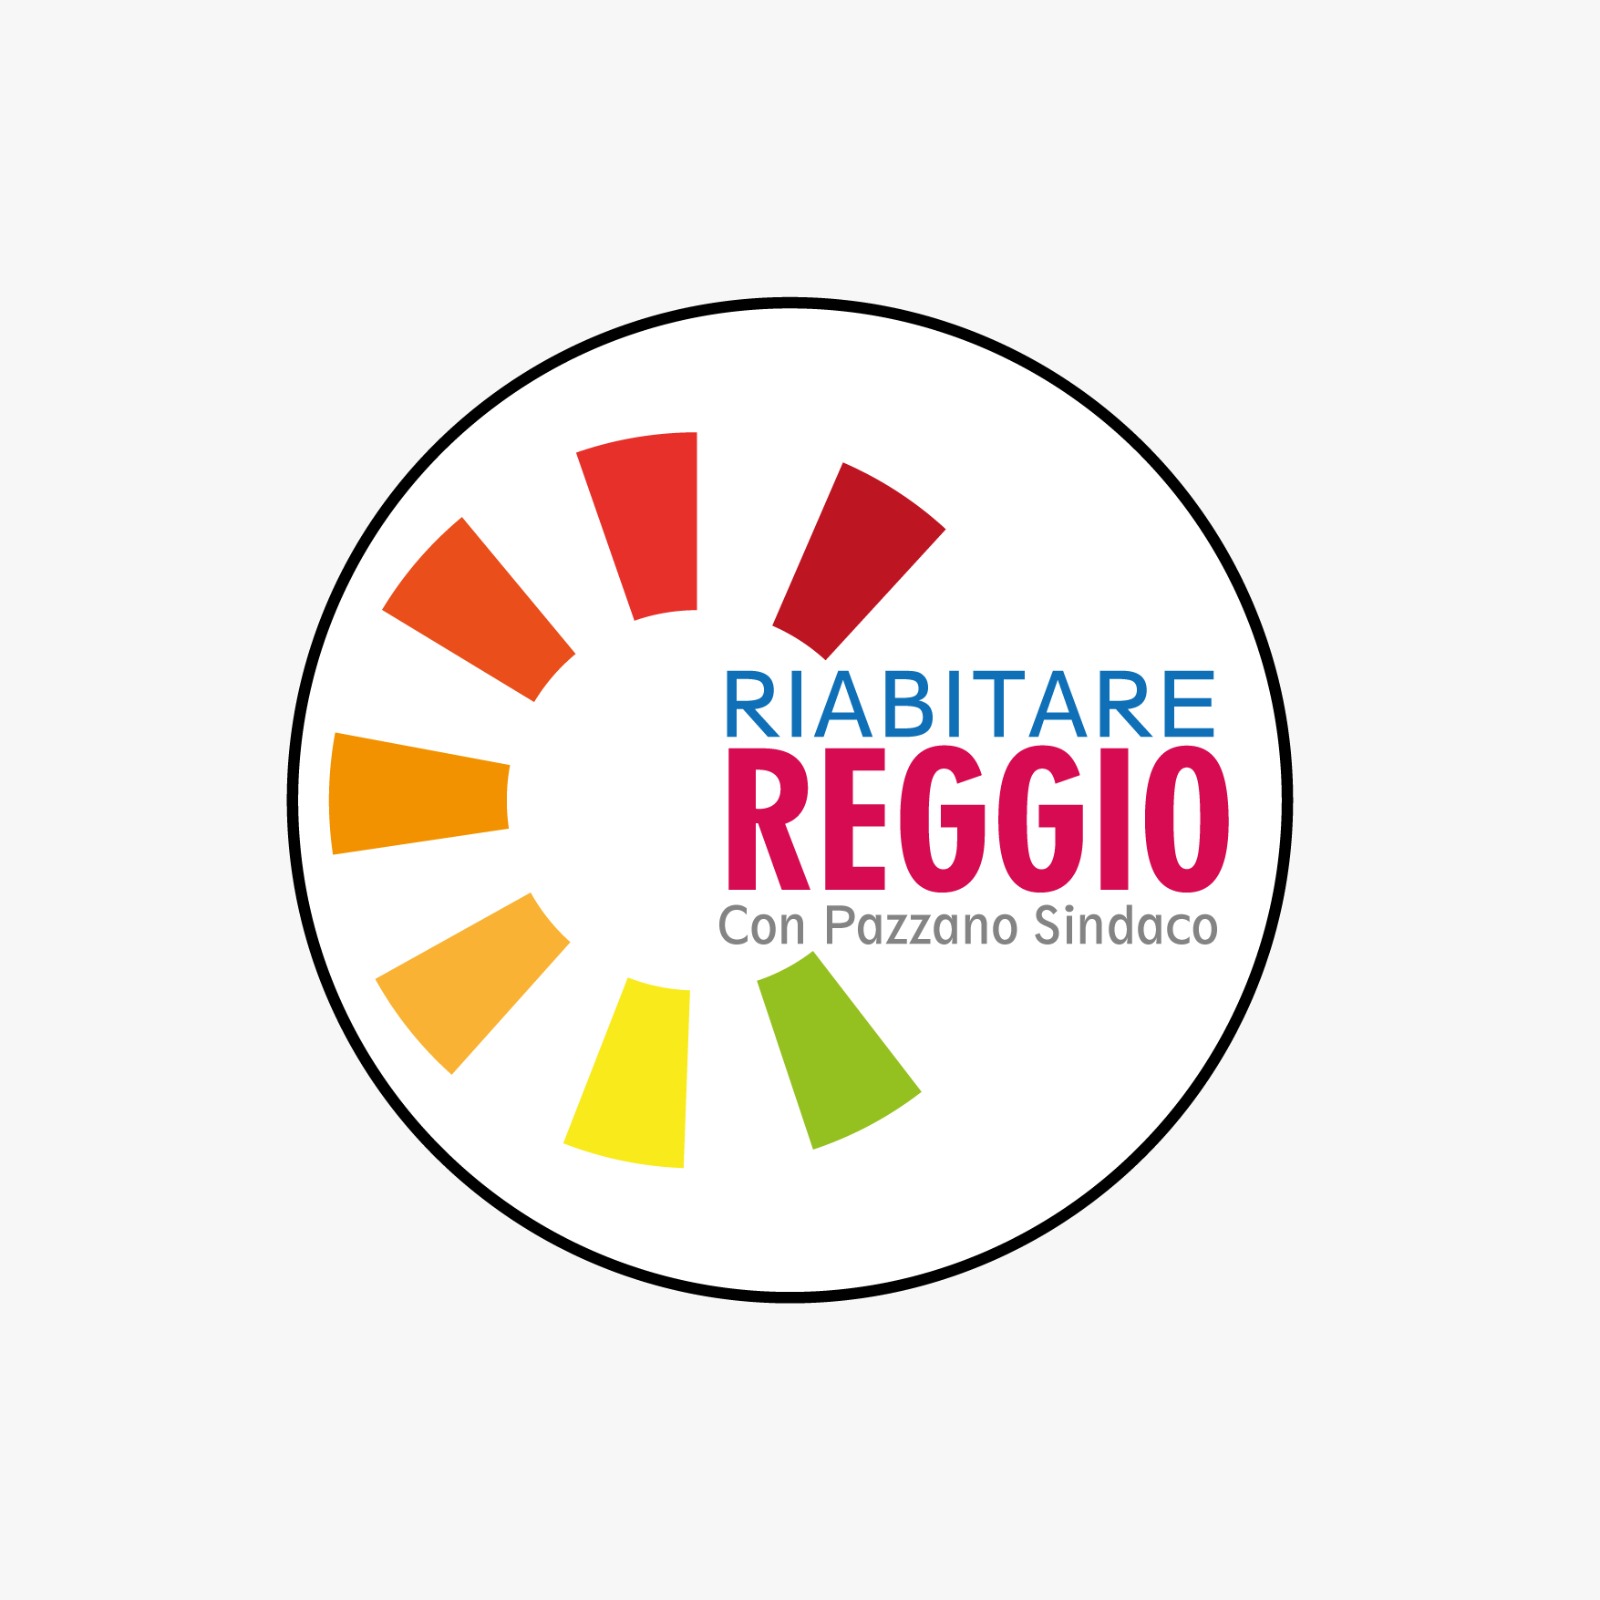 Elezioni comunali, “riAbitare Reggio” al fianco di Pazzano